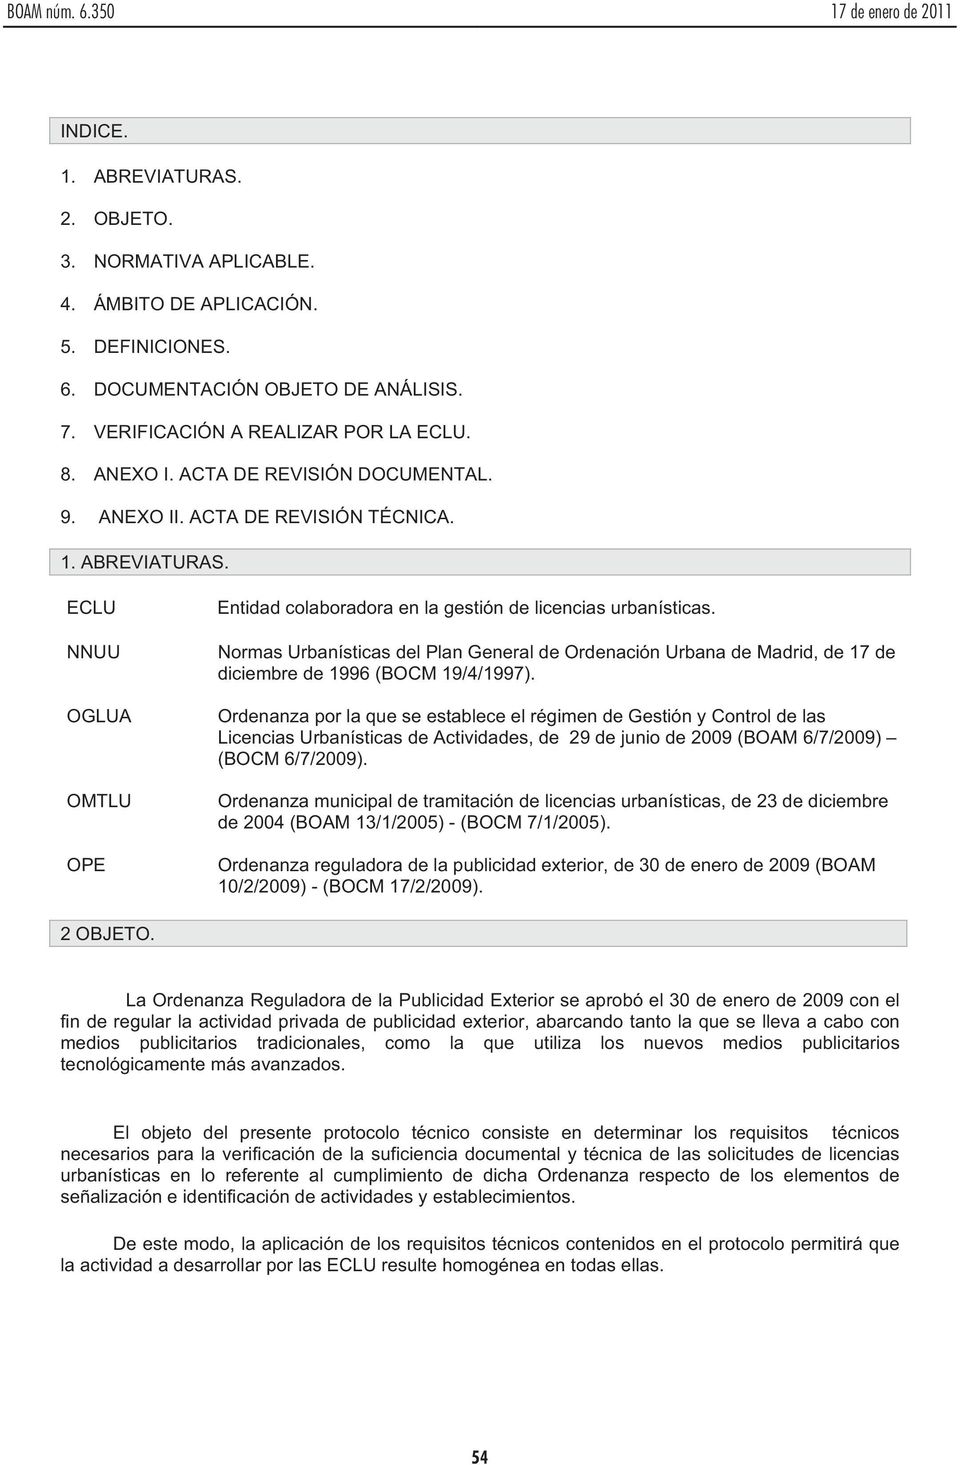 Normas Urbanísticas del Plan General de Ordenación Urbana de Madrid, de 17 de diciembre de 1996 (BOCM 19/4/1997).